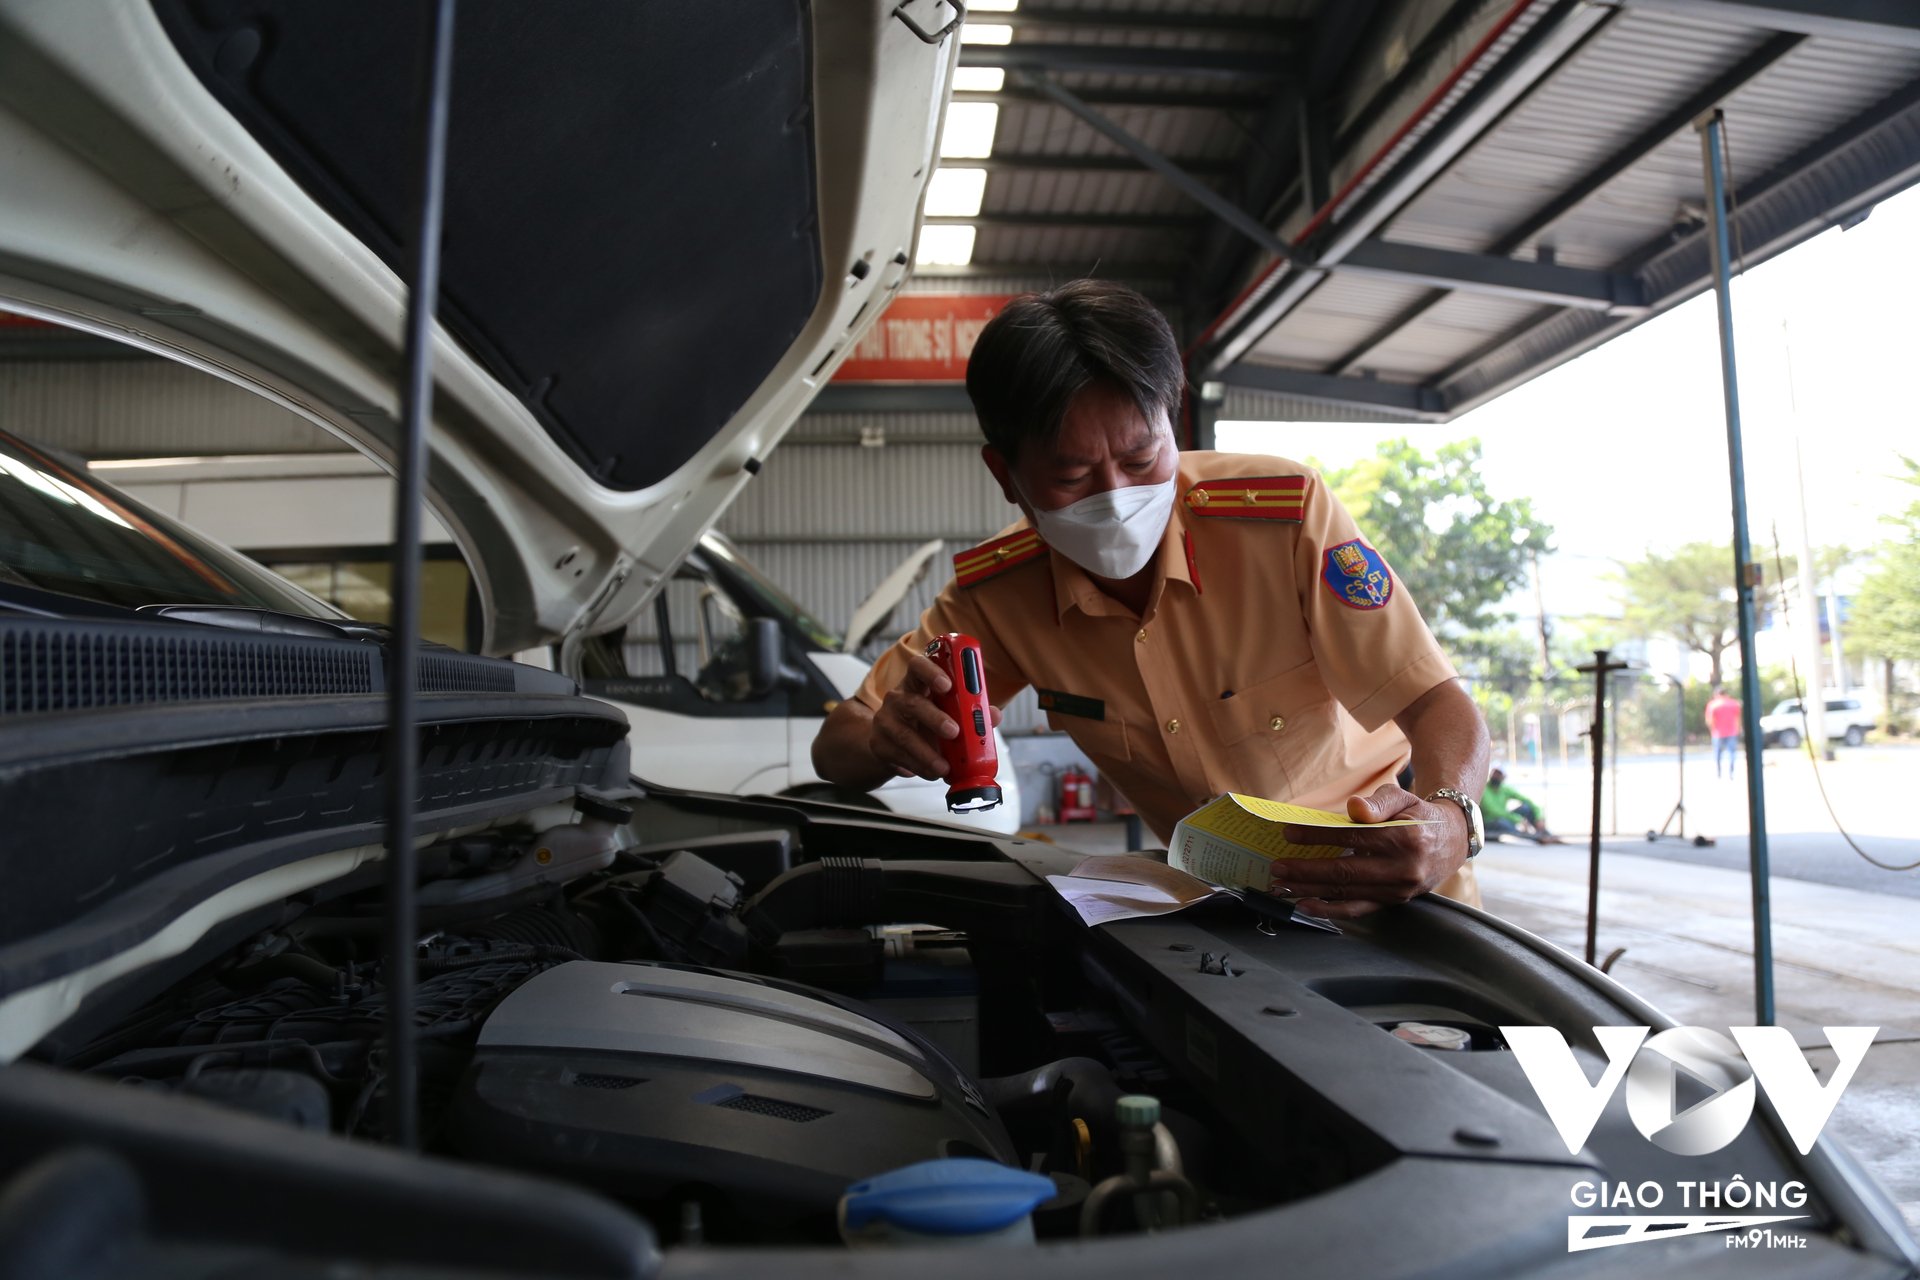 Cục Đăng kiểm Việt Nam chỉ thực hiện thẩm định thiết kế đối với một số trường hợp nội dung cải tạo xe cơ giới phức tạp, đòi hòi cần có chuyên môn sâu